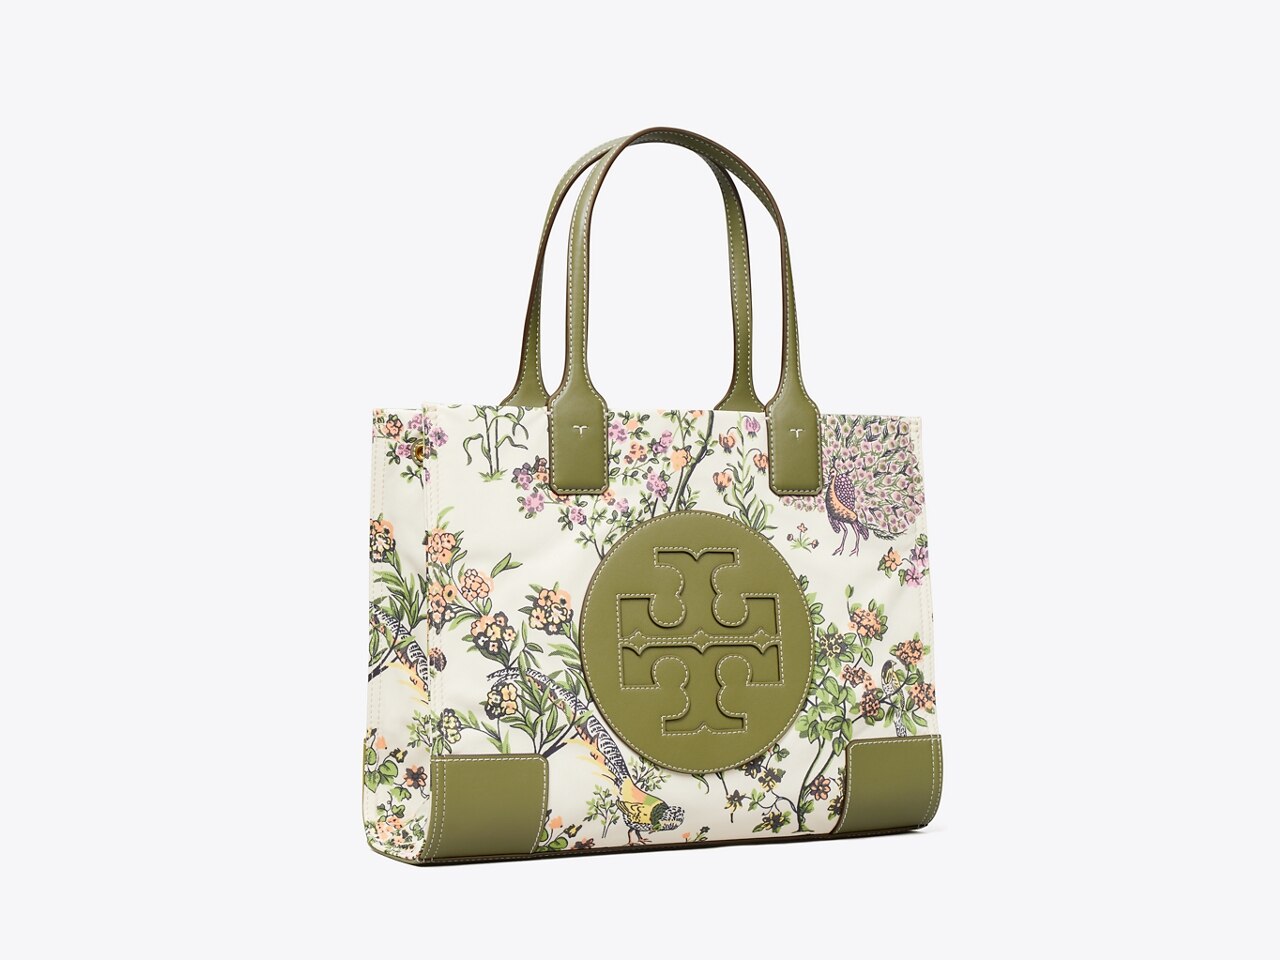 Ella Printed Mini Tote Bag: Women's Handbags